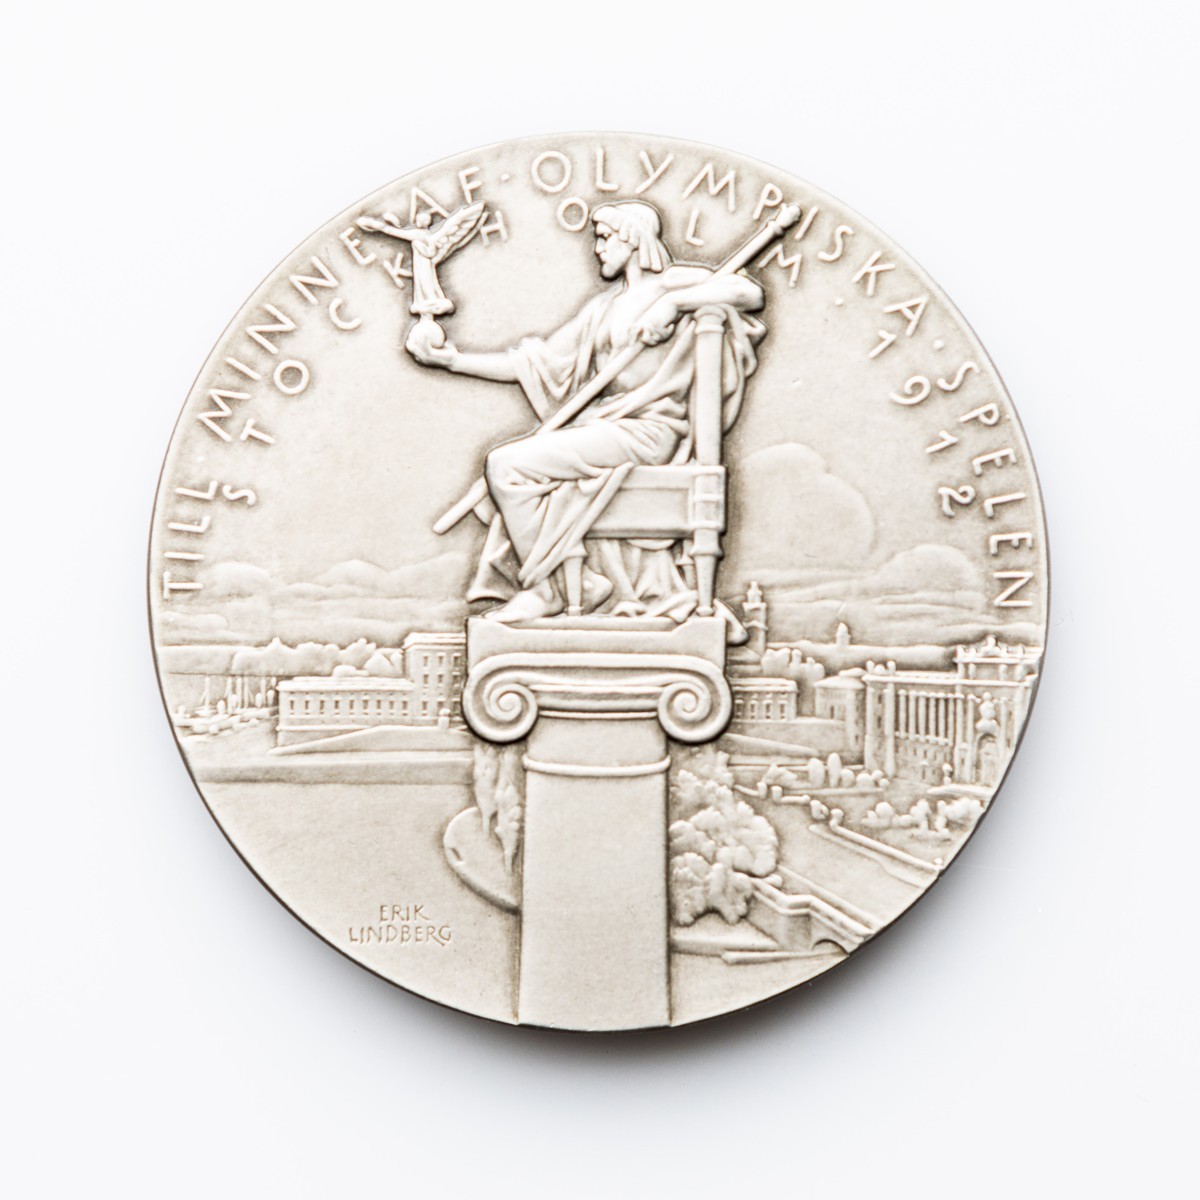 Účastnická medaile OH 1912 Stockholm